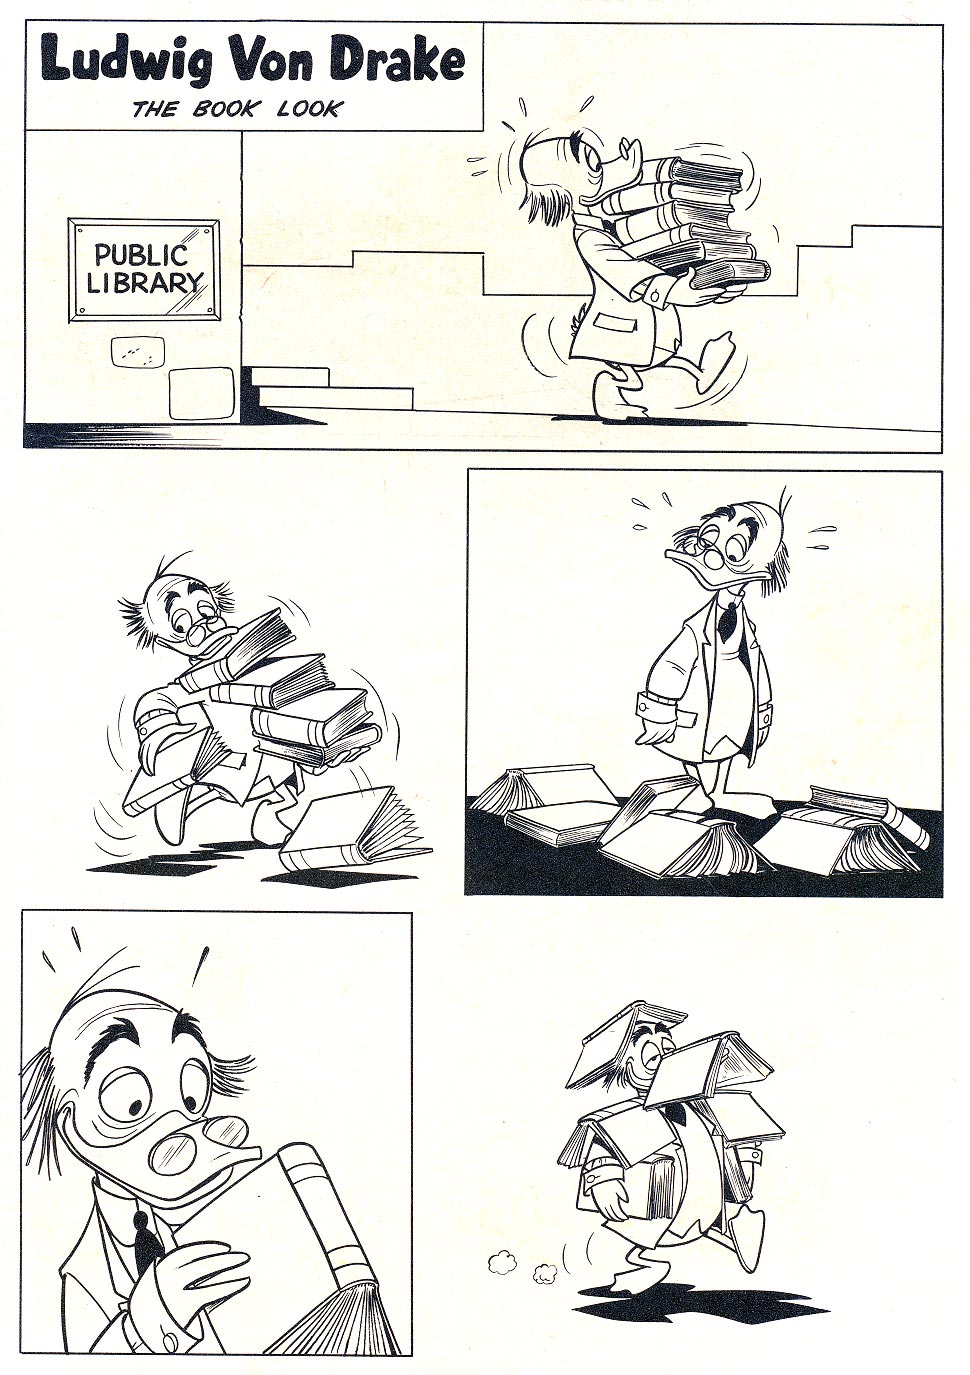 Read online Walt Disney's Ludwig Von Drake comic -  Issue #2 - 35